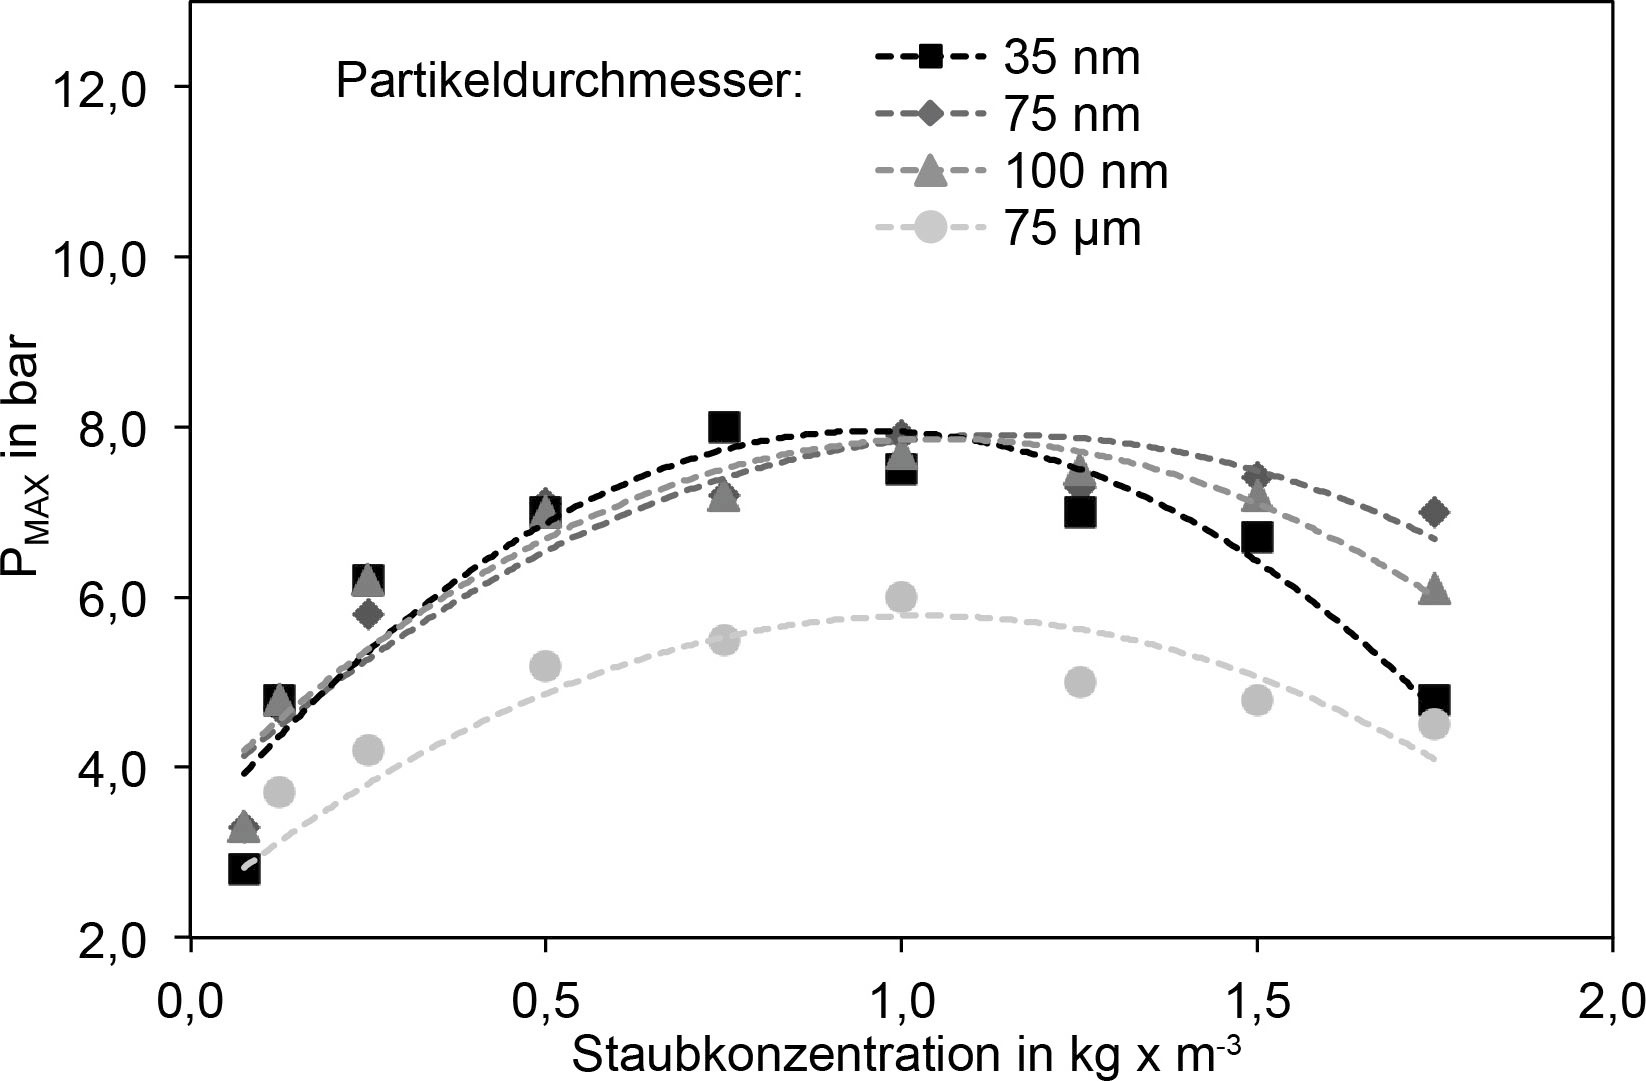 Bild 5. PMAX-Werte für Aluminium bei verschiedenen Staubkonzentrationen und Partikelgrößen [22] (Auszug). Quelle: TU Wien